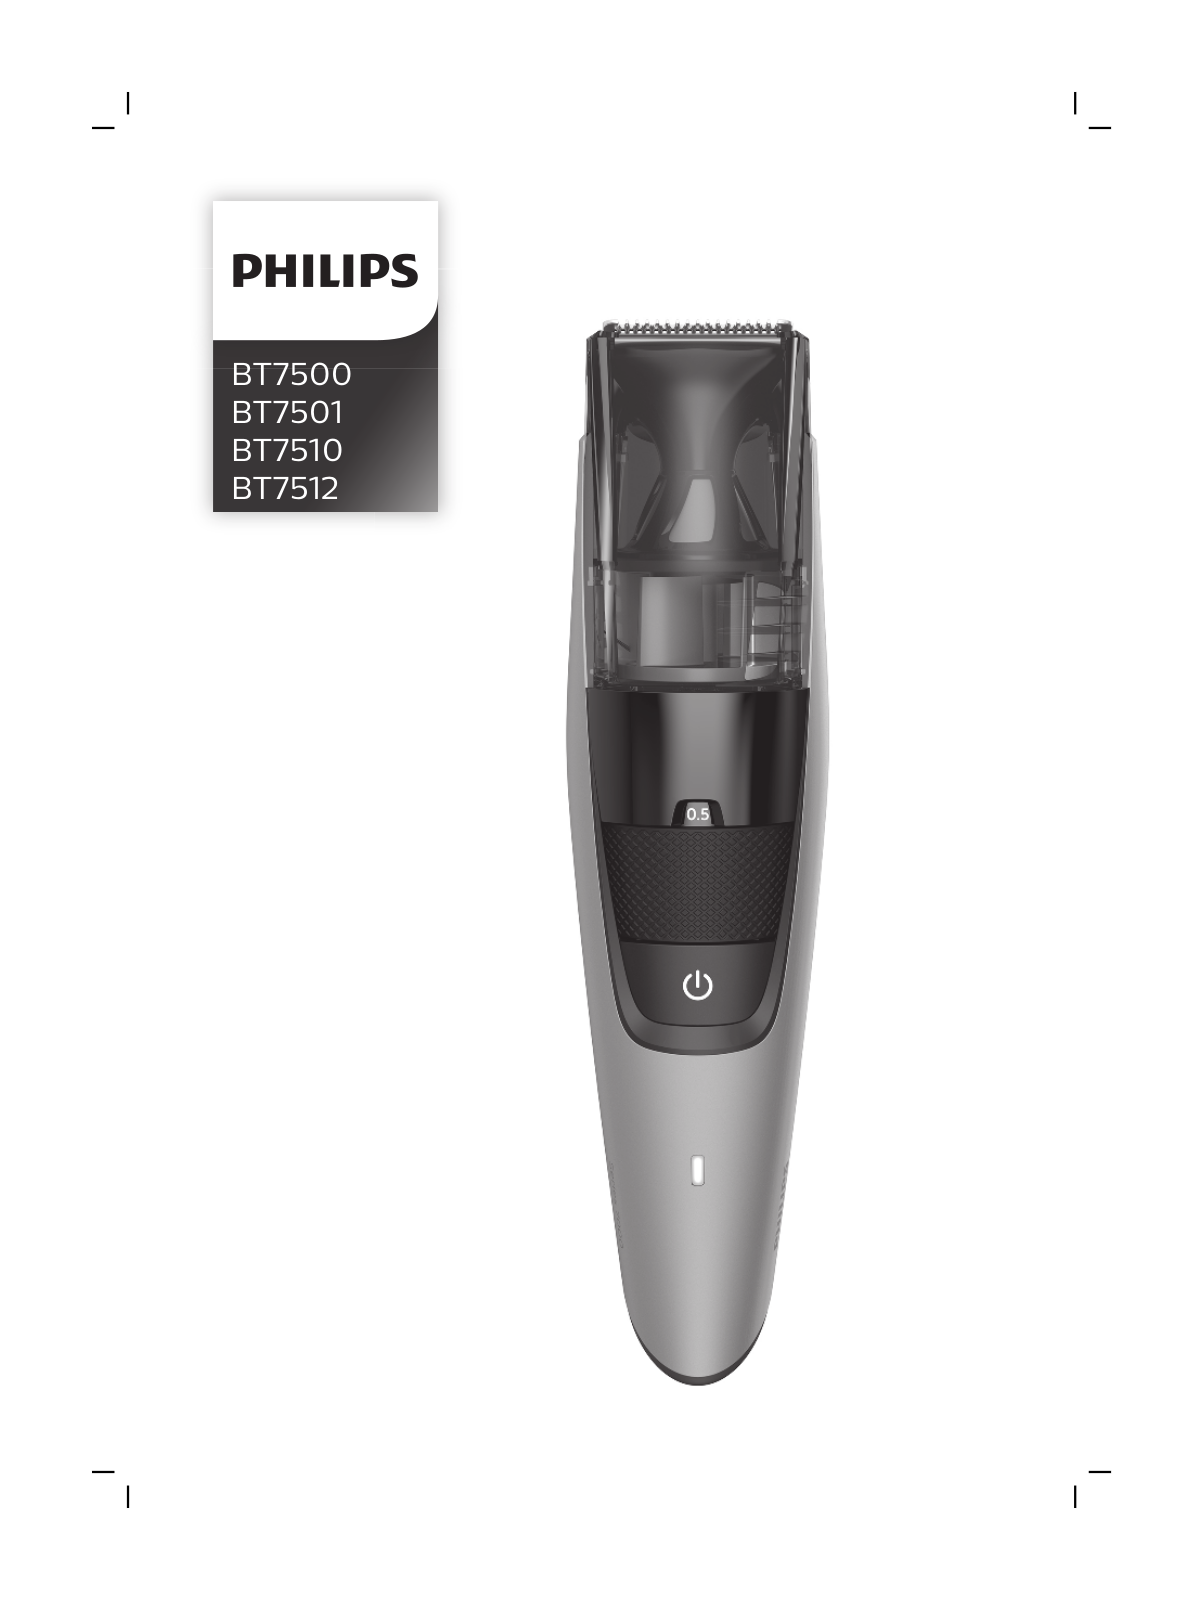 Philips BT7501, BT7512, BT7500, BT7510 User Manual